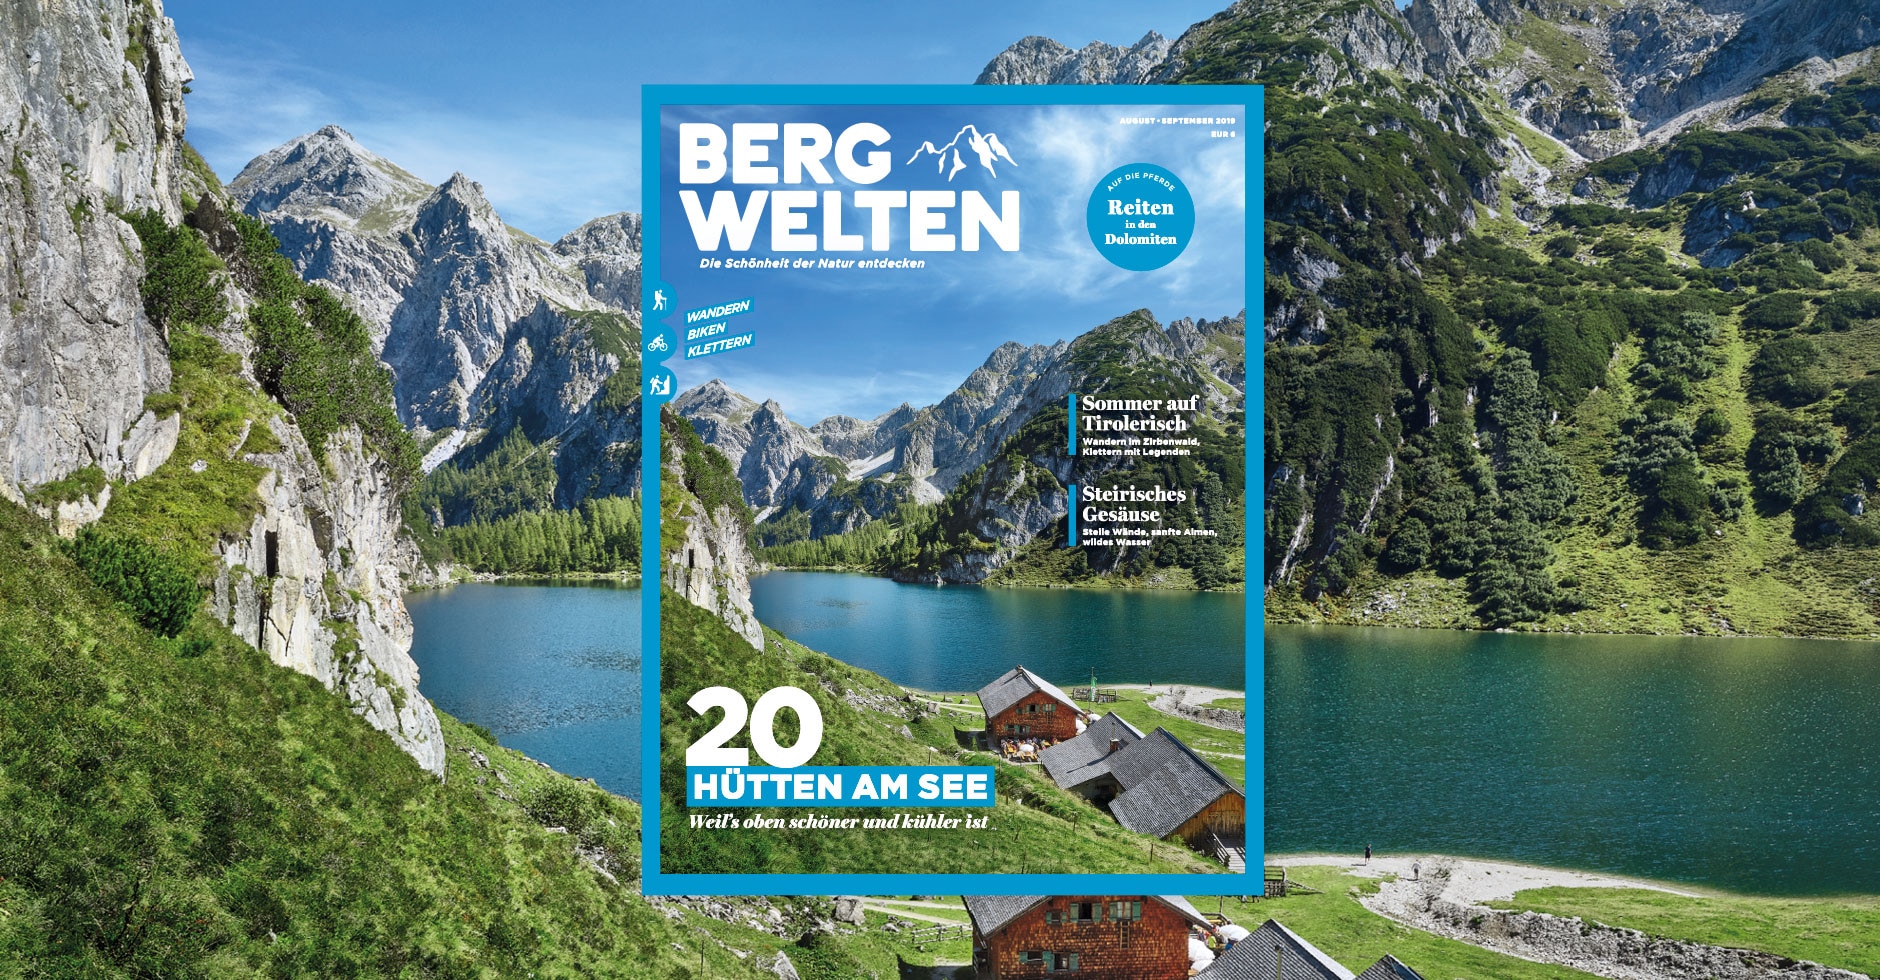 Das Bergwelten Magazin (August/September 2019)